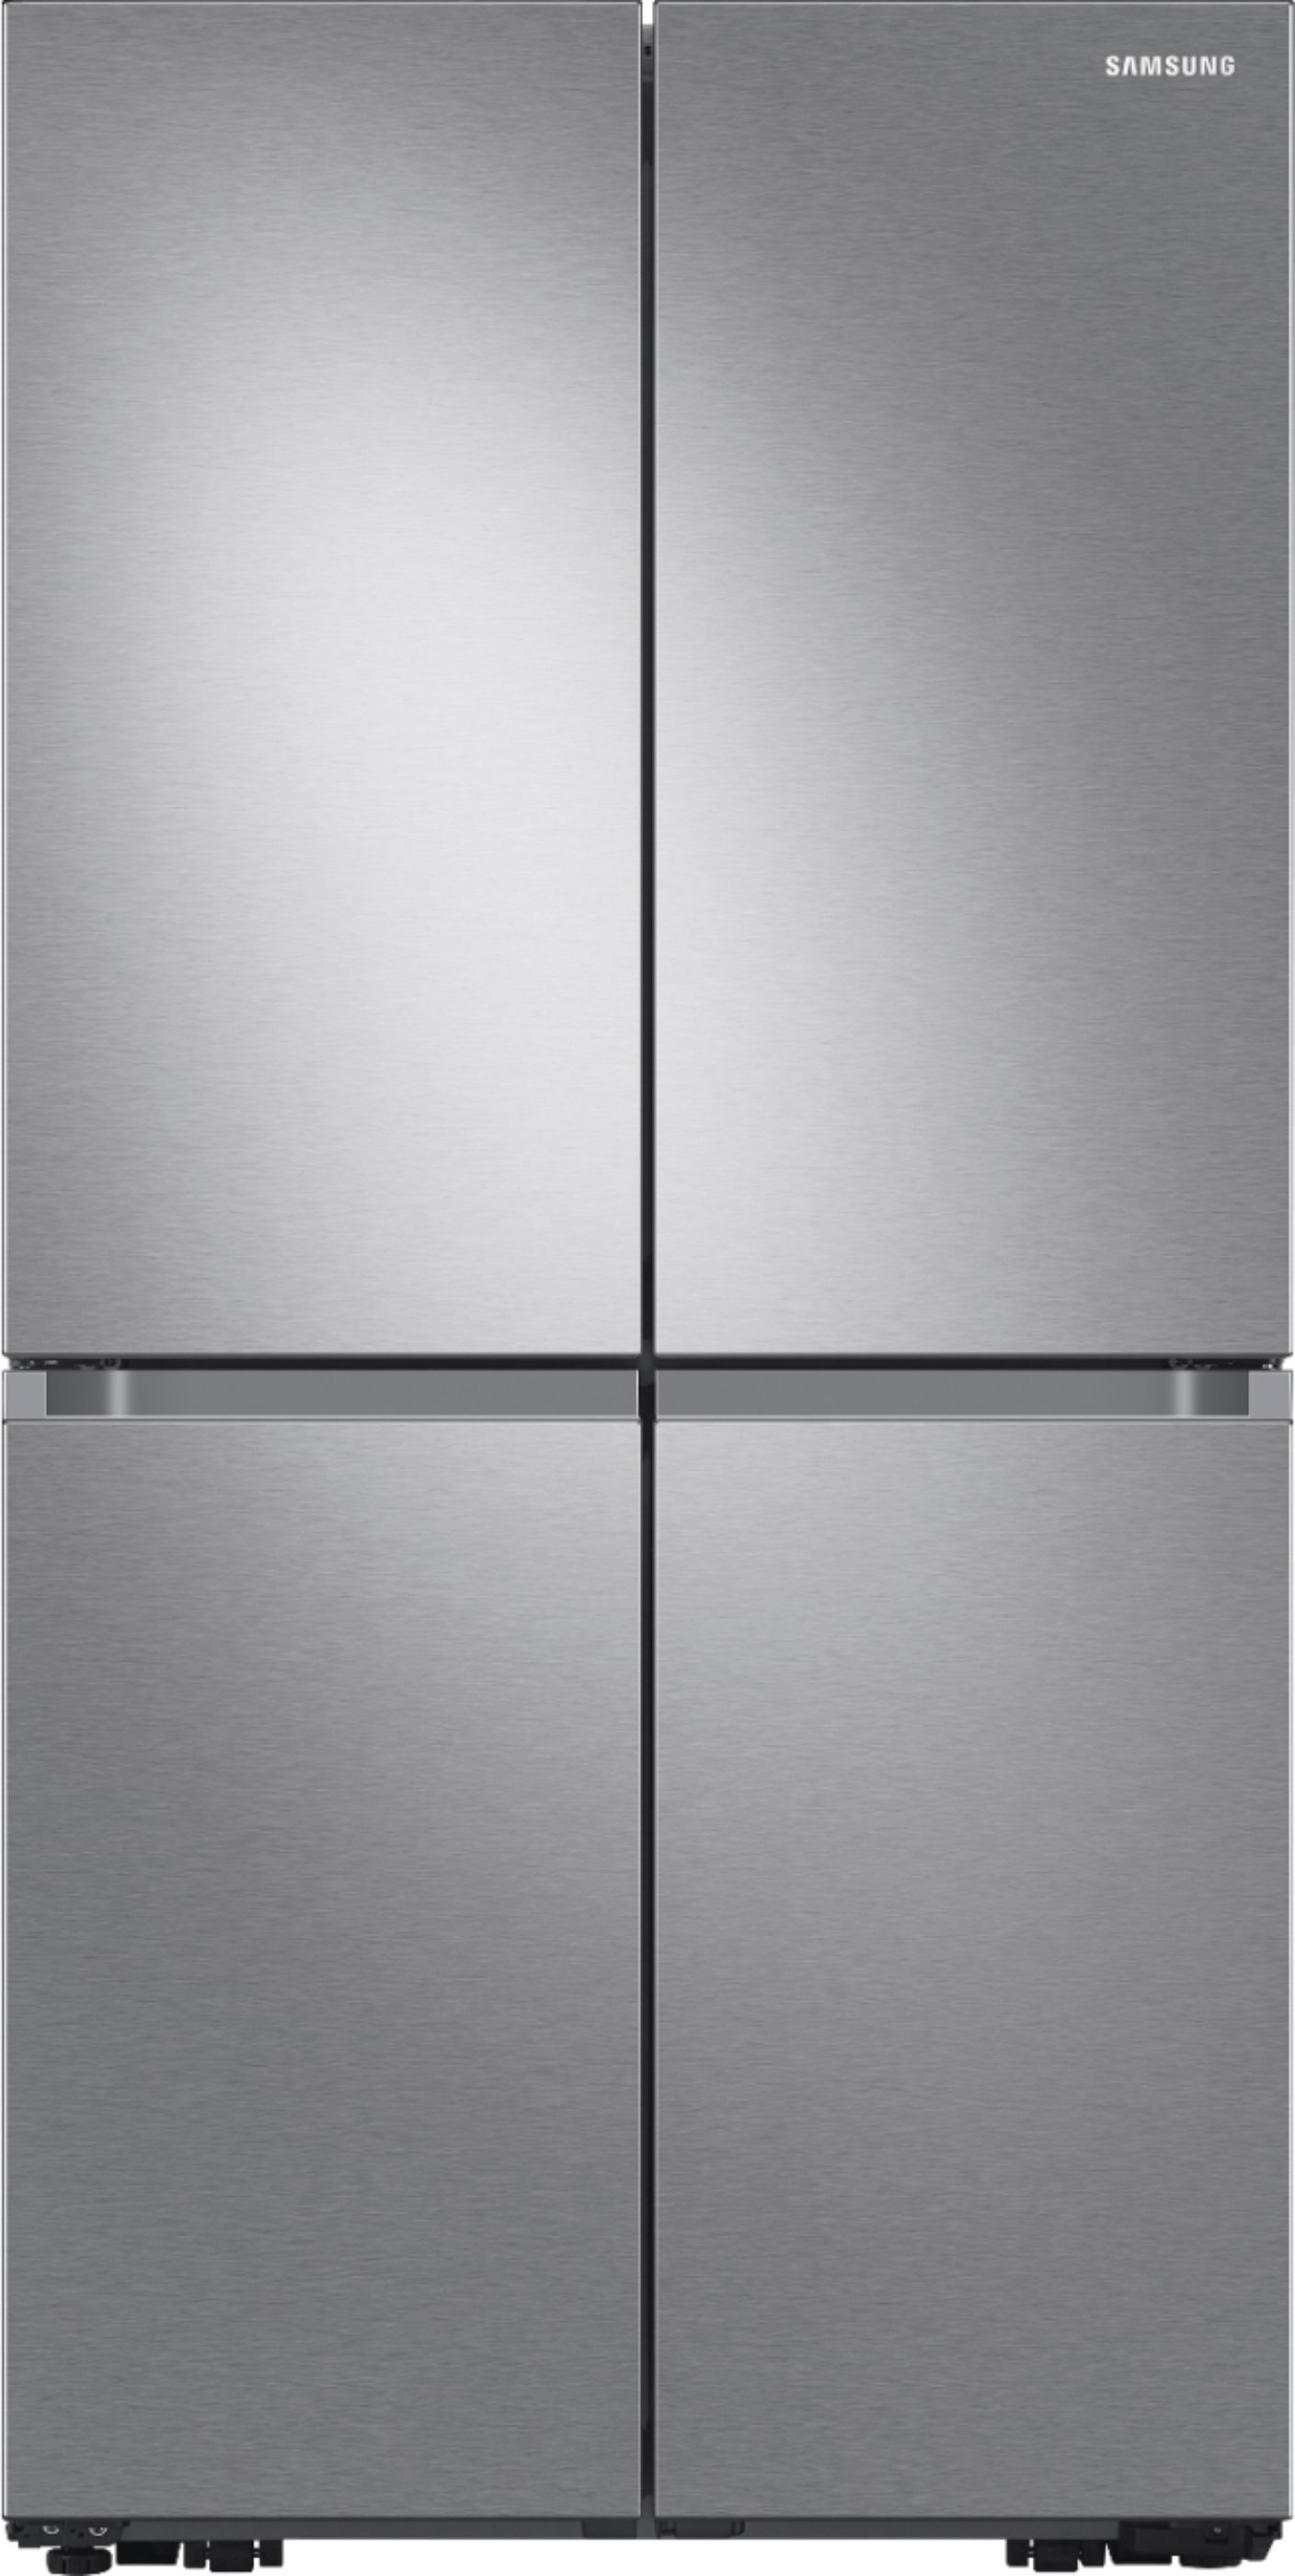 Samsung 23 cu. ft. 4-Door Flex French Door Counter Depth Refrigerator with WiFi, Beverage Center ... | Best Buy U.S.